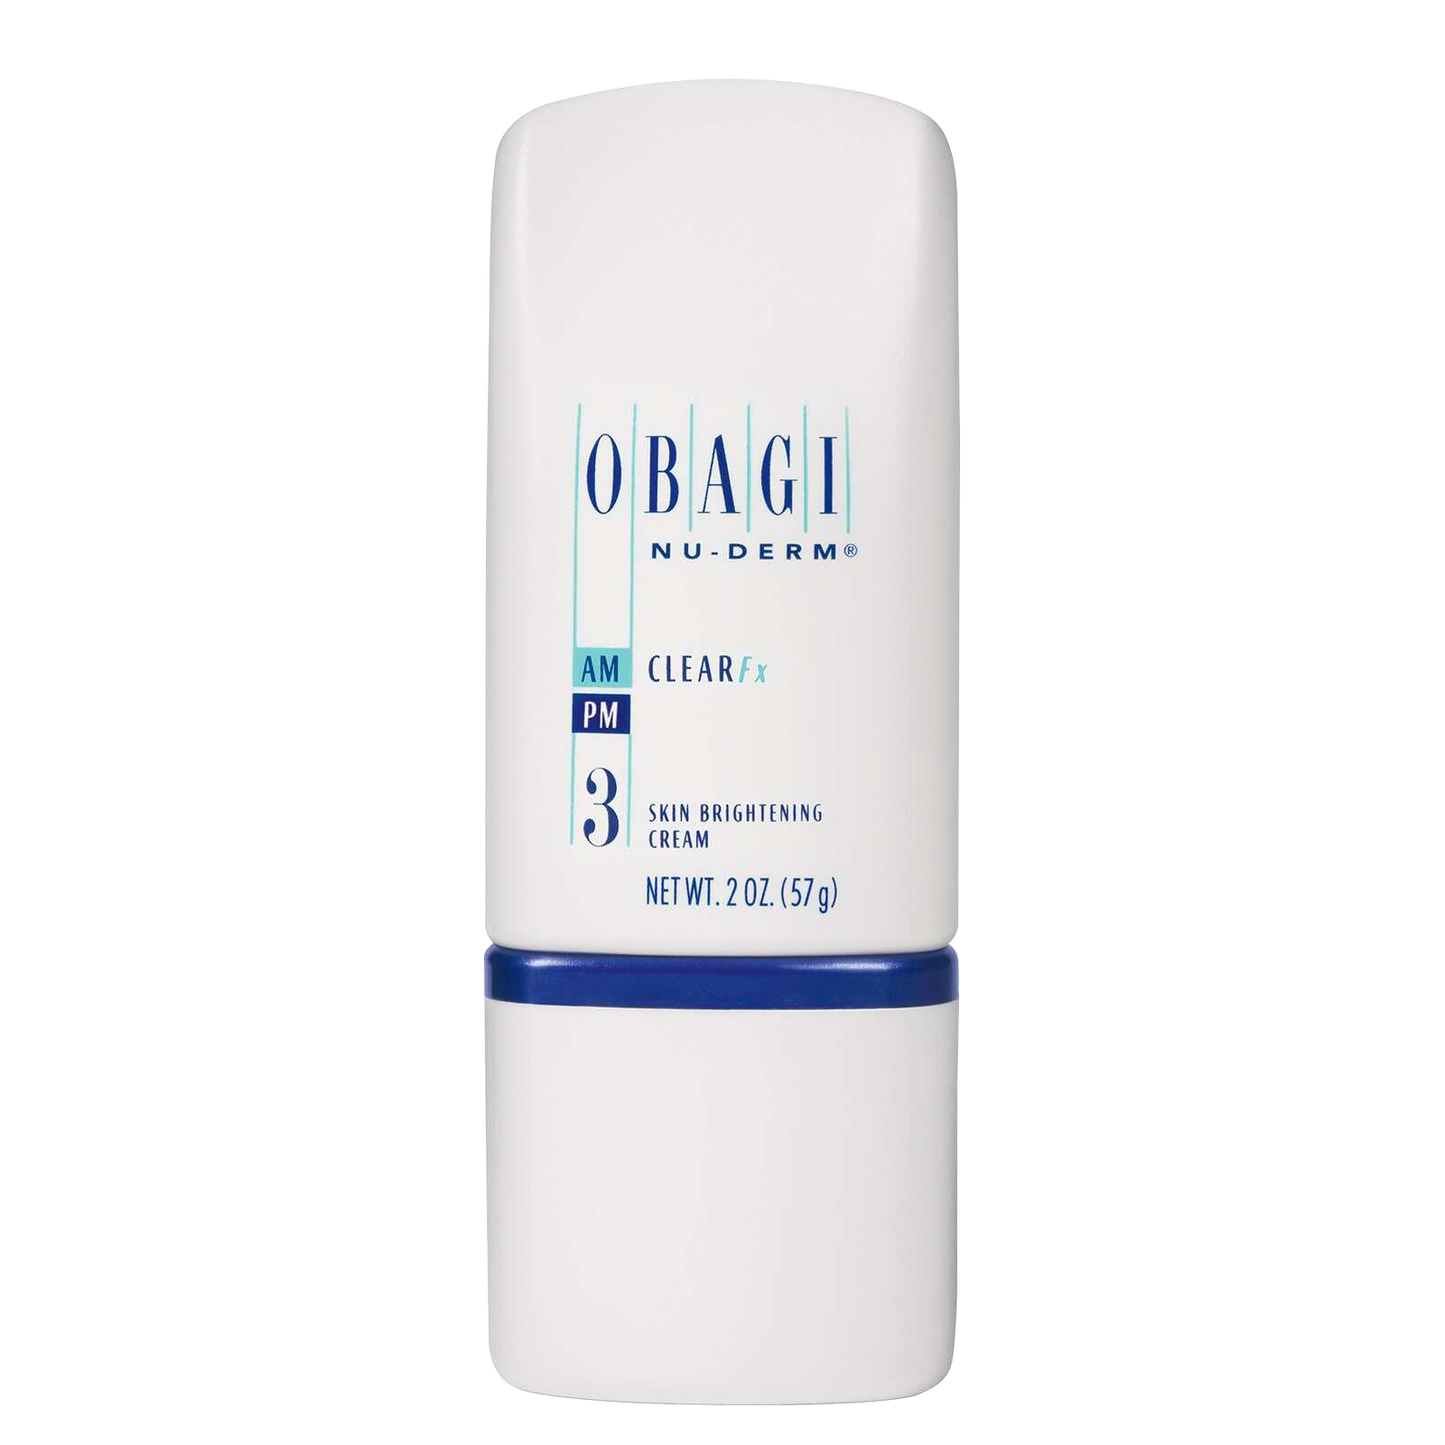 Obagi Nu-Derm Clear FX skin brightening cream 57G / 2 OZ.